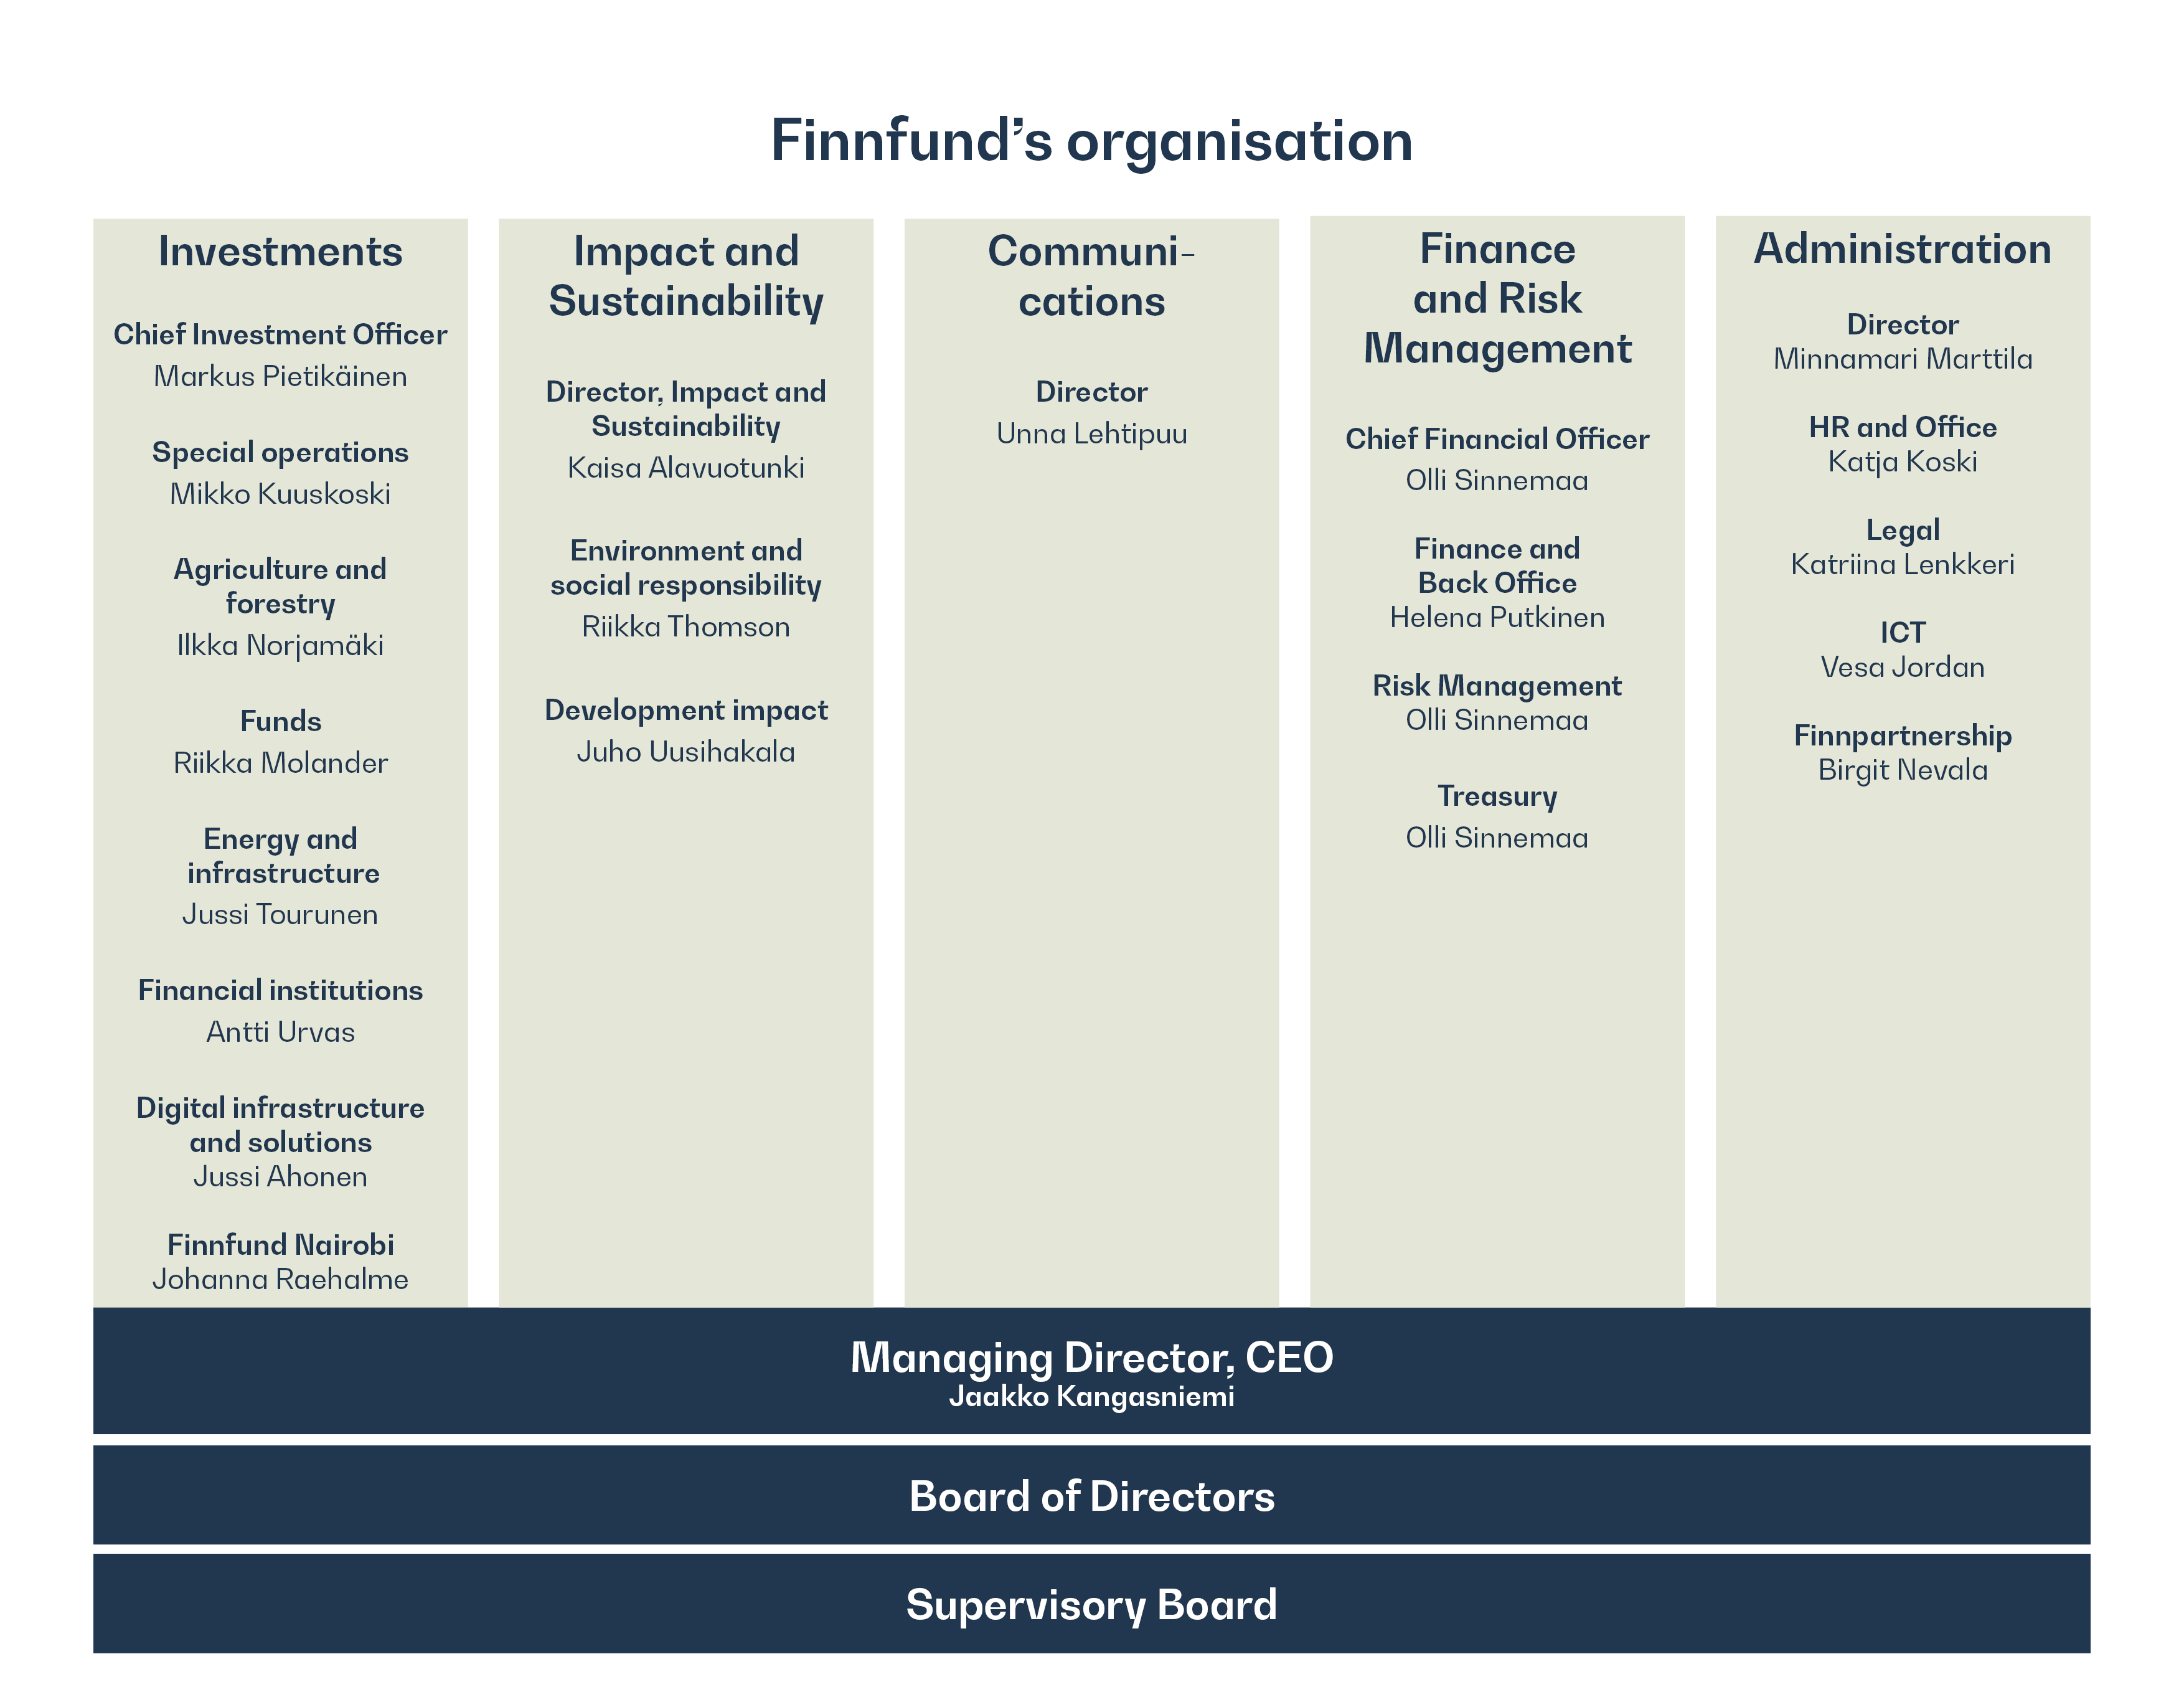 Finnfund's organisational structure